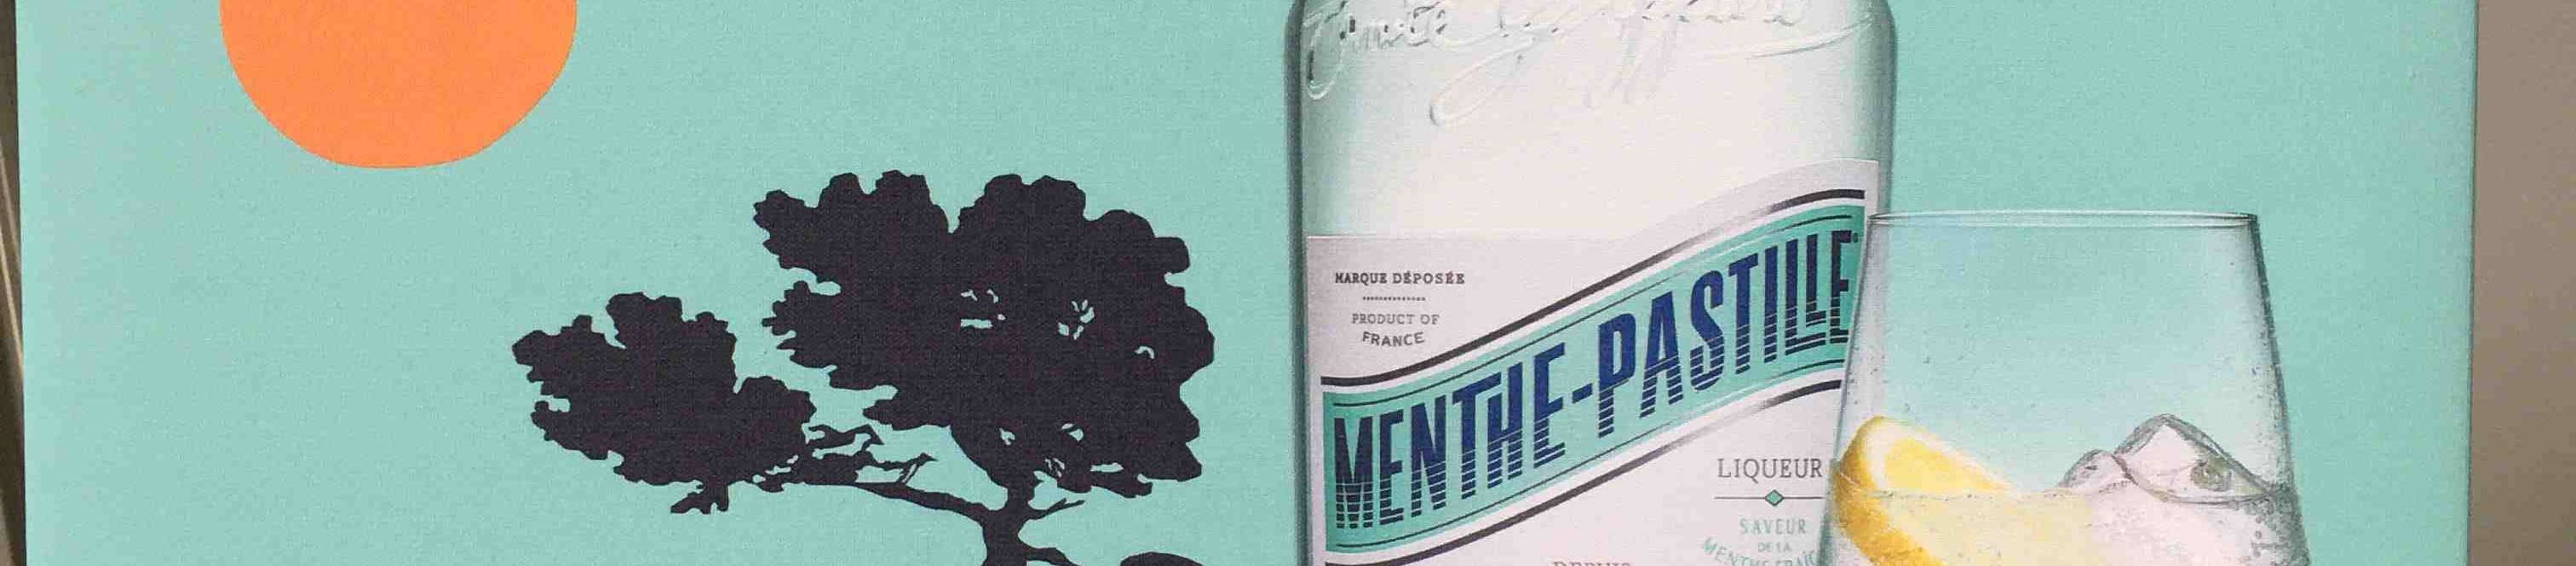 Menthe-Pastille : l'Iconique Liqueur depuis 1885